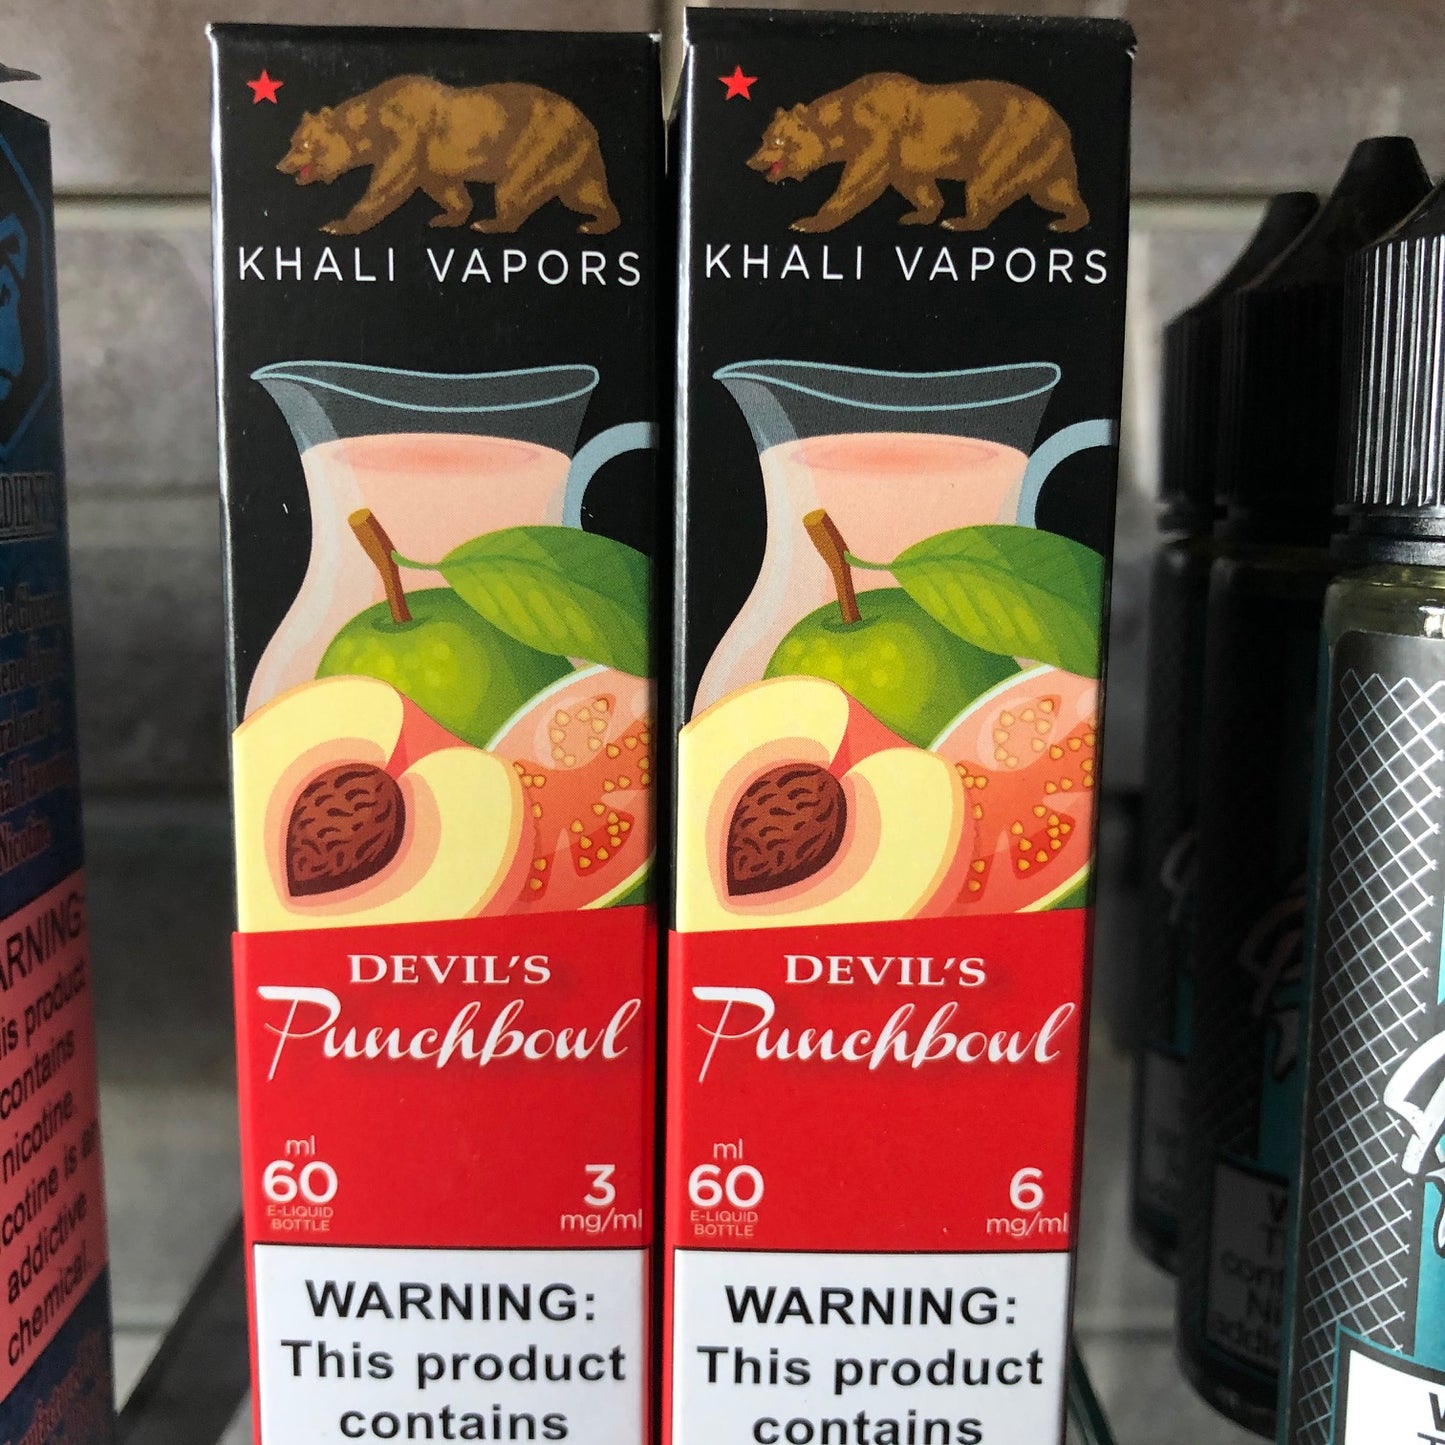 Khali vapors